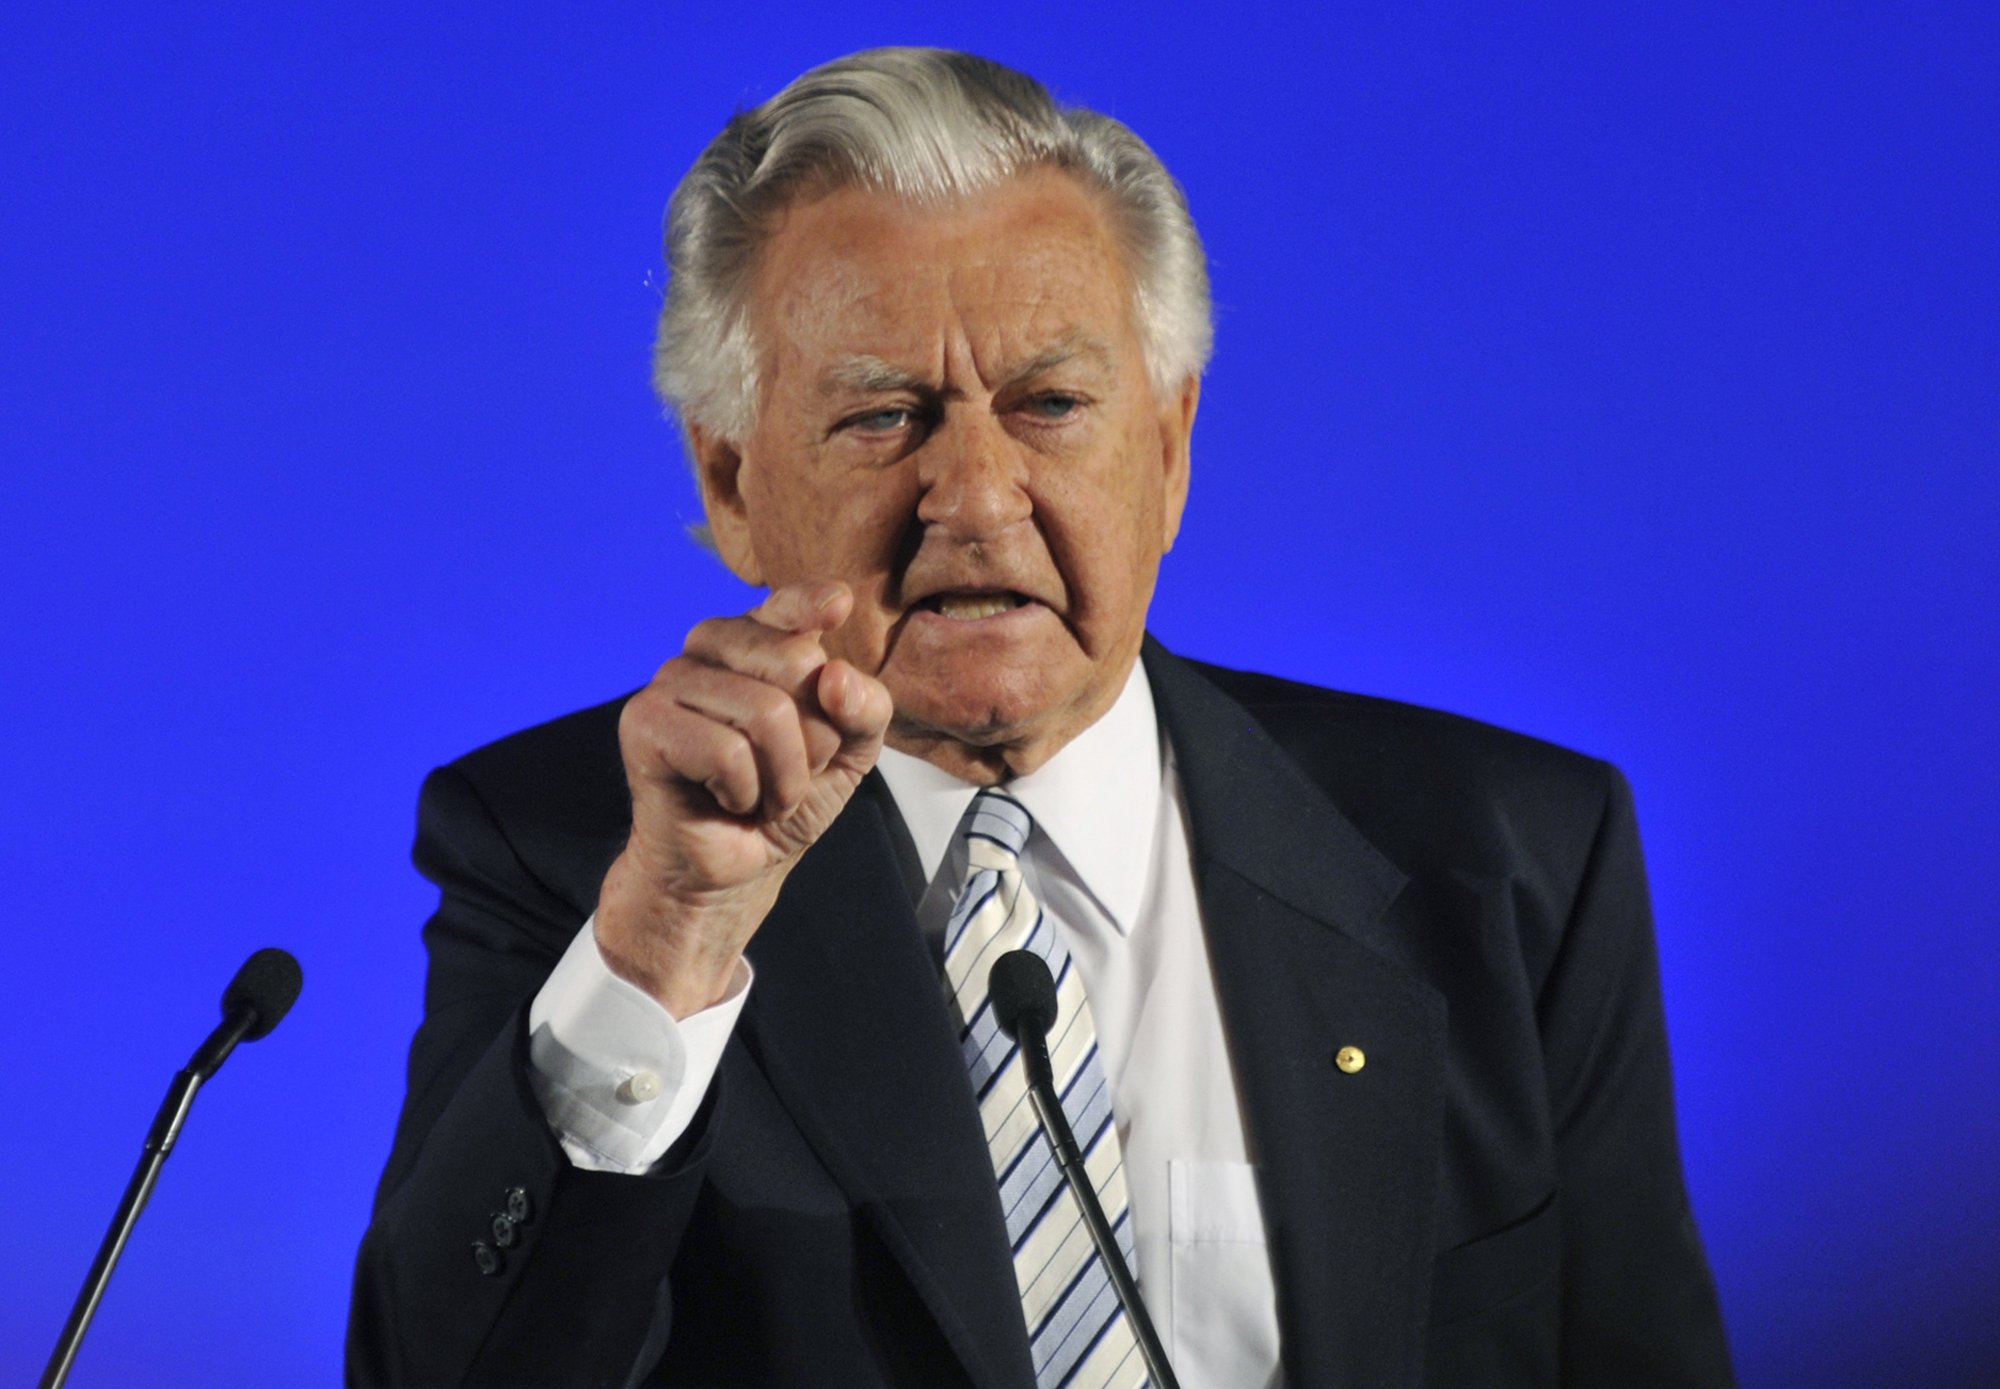 Ex-Australian PM Bob Hawke dies at 89